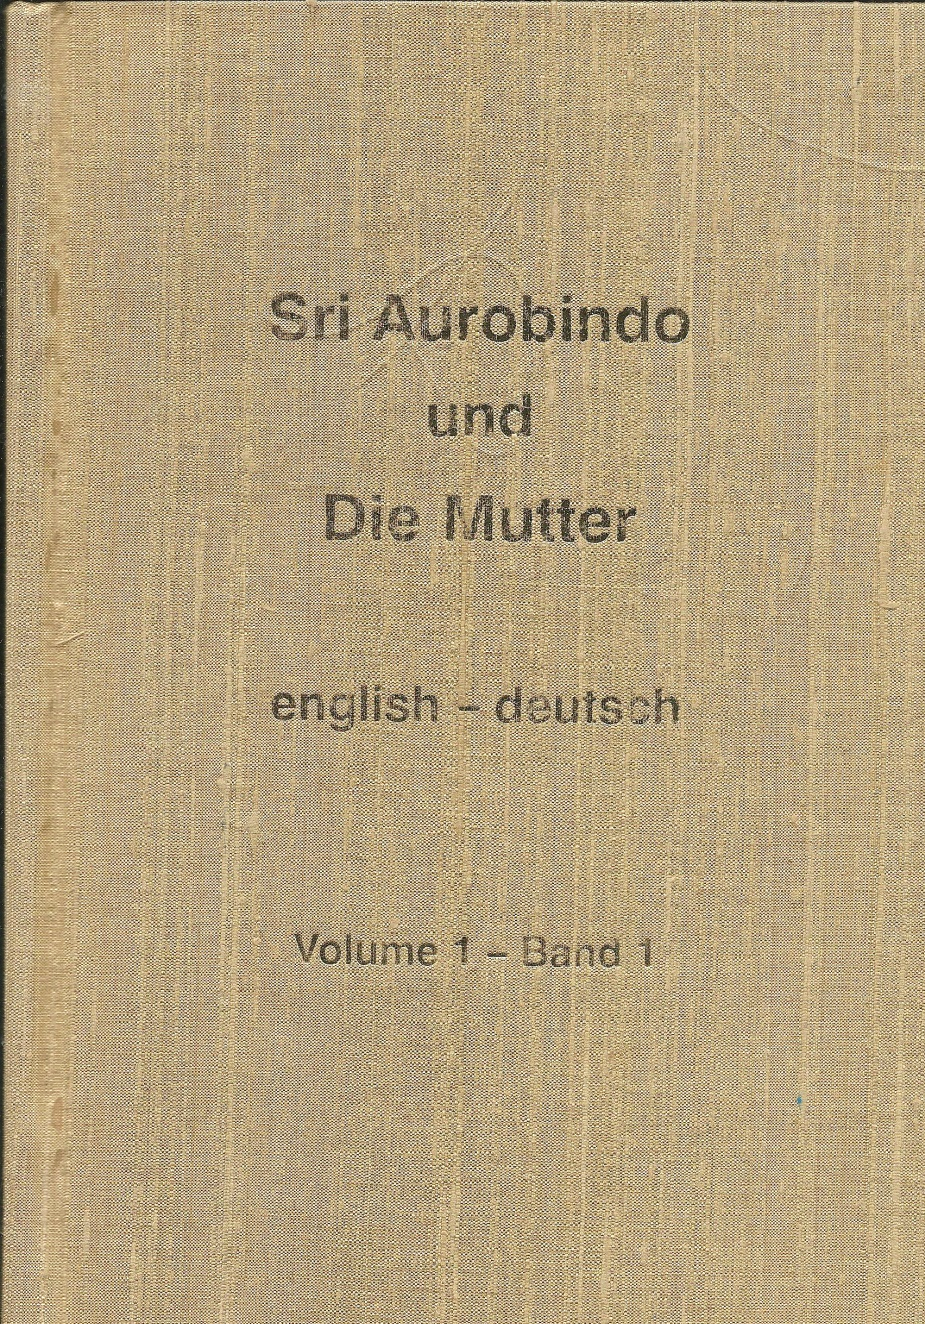 Sri Aurobindo und die Mutter – Englisch-Deutsch